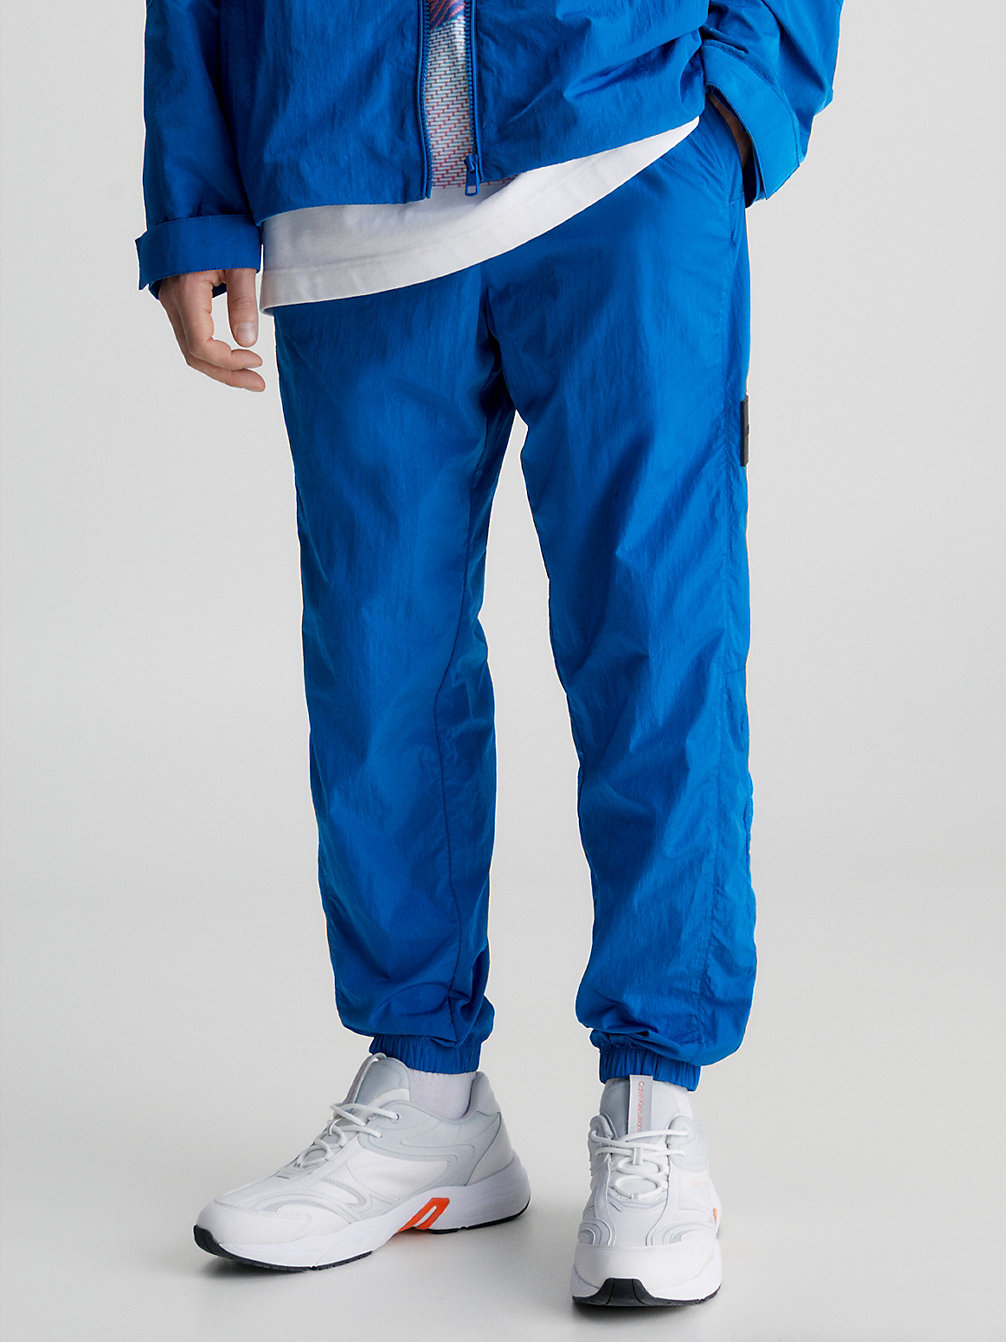 TARPS BLUE > Zwężane Spodnie Z Przetworzonego Nylonu > undefined Mężczyźni - Calvin Klein